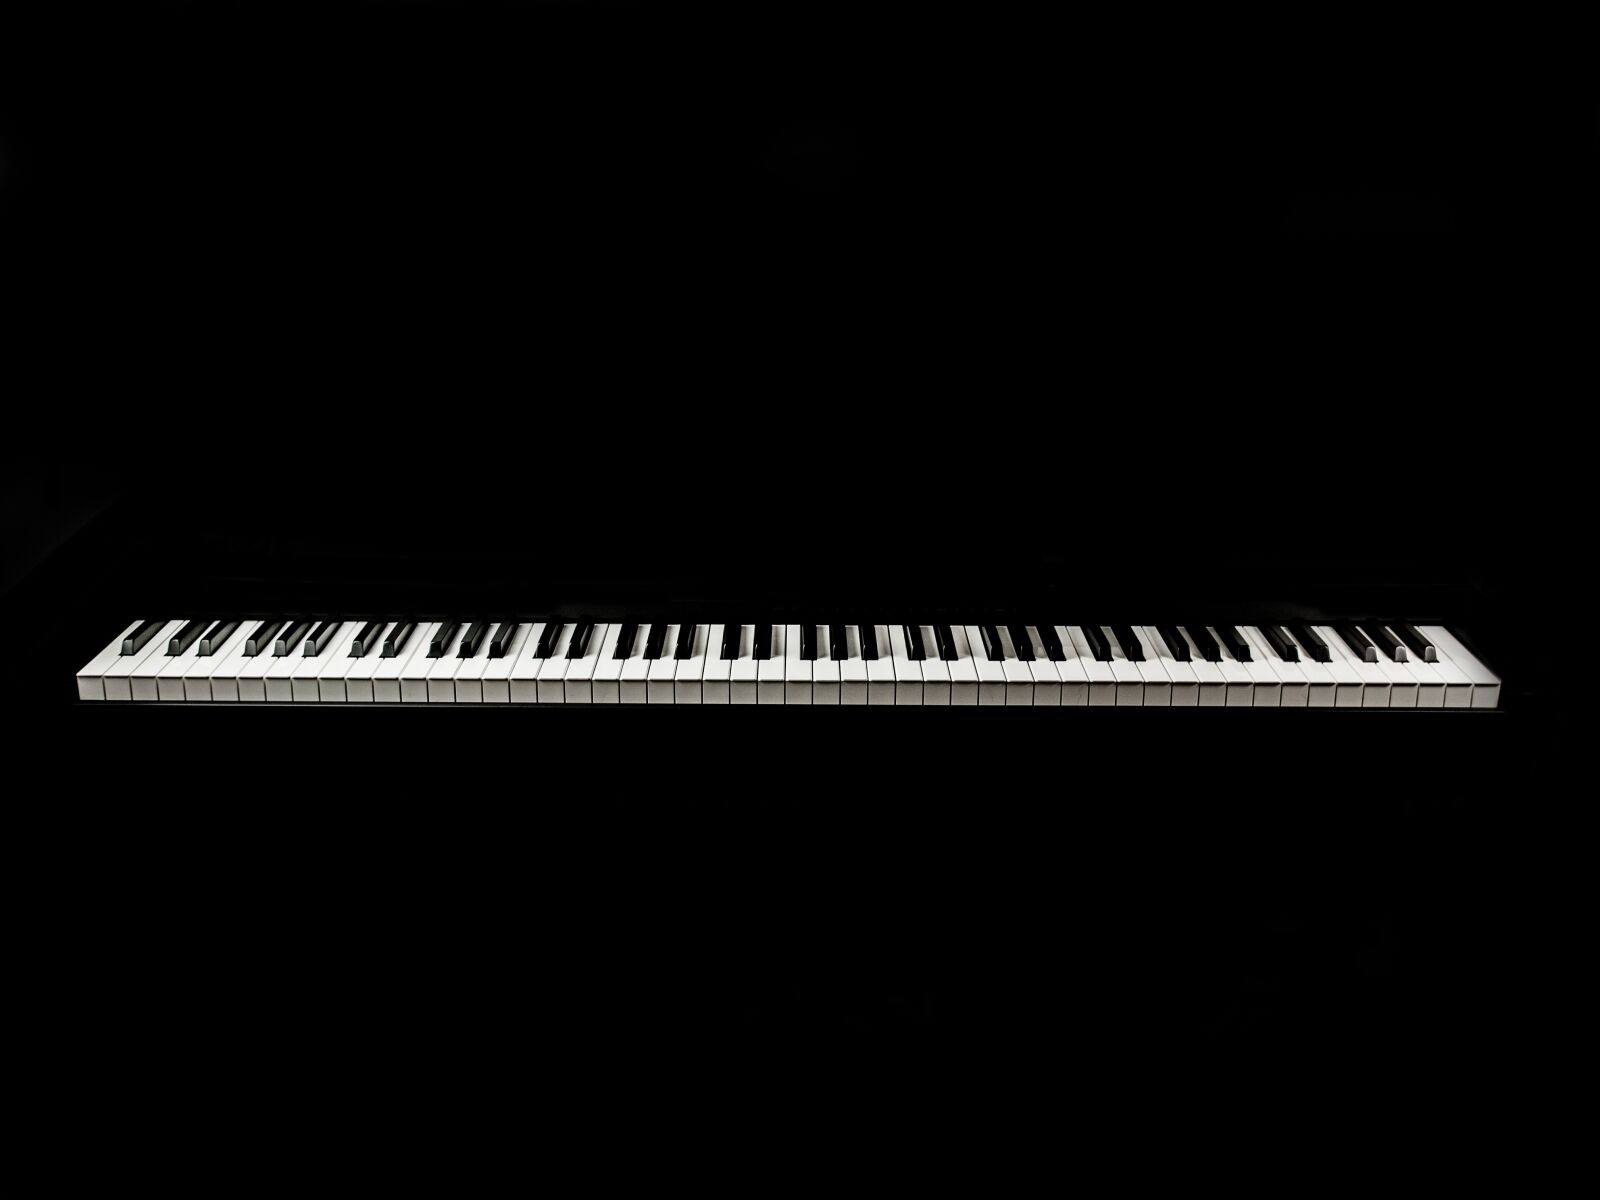 Olympus E-620 (EVOLT E-620) sample photo. Piano, keys, keyboard photography